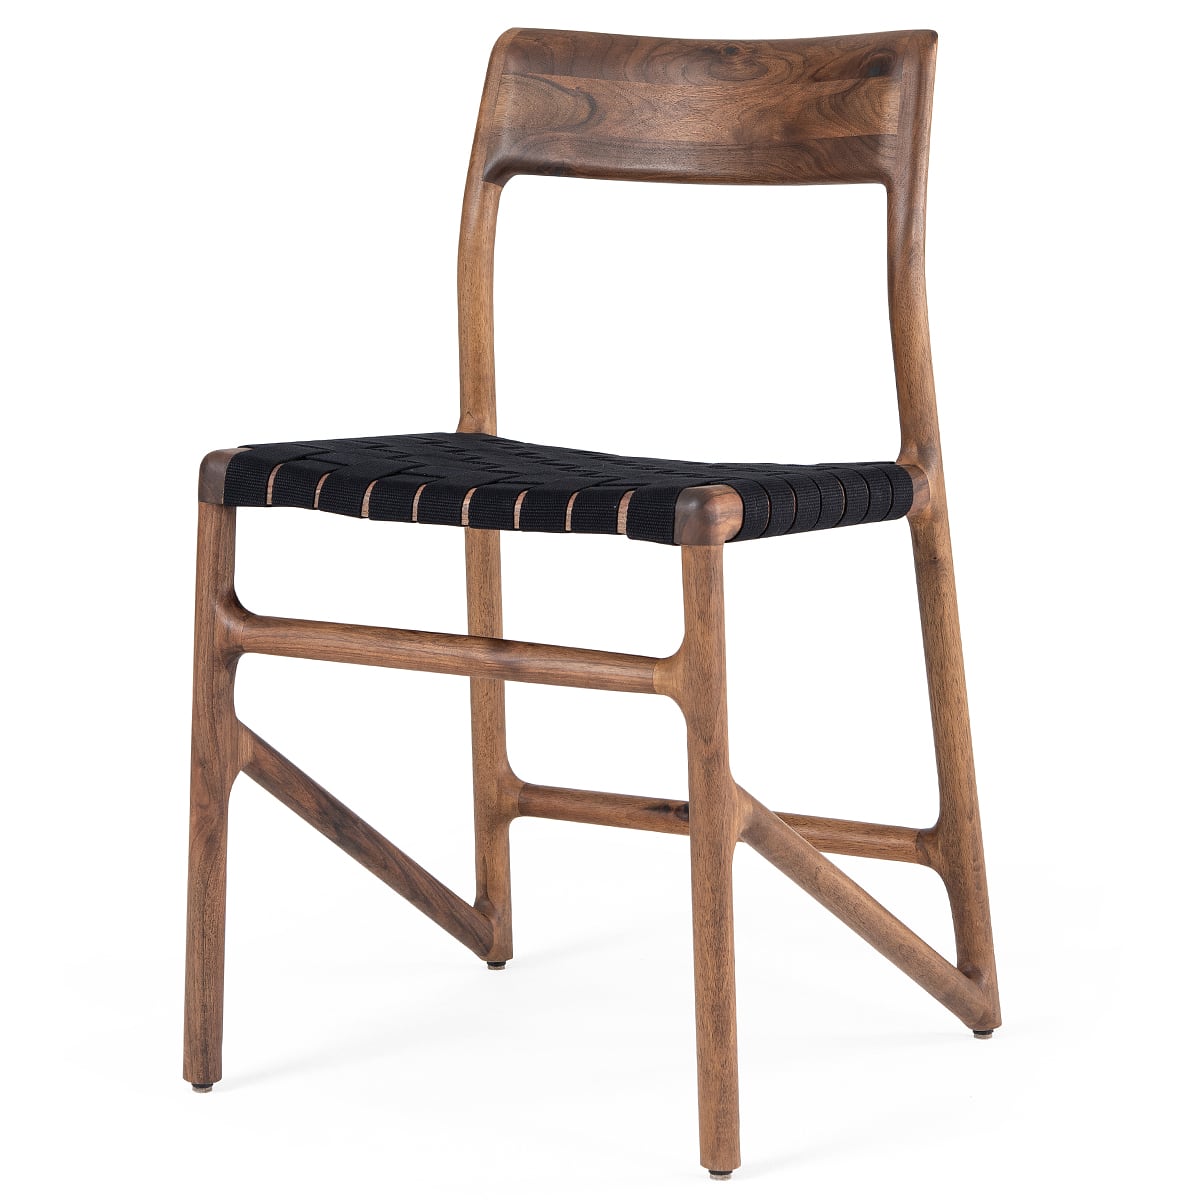 FAWN - chaise  - Noyer massif, finition huilé naturel, sangle de coton noir